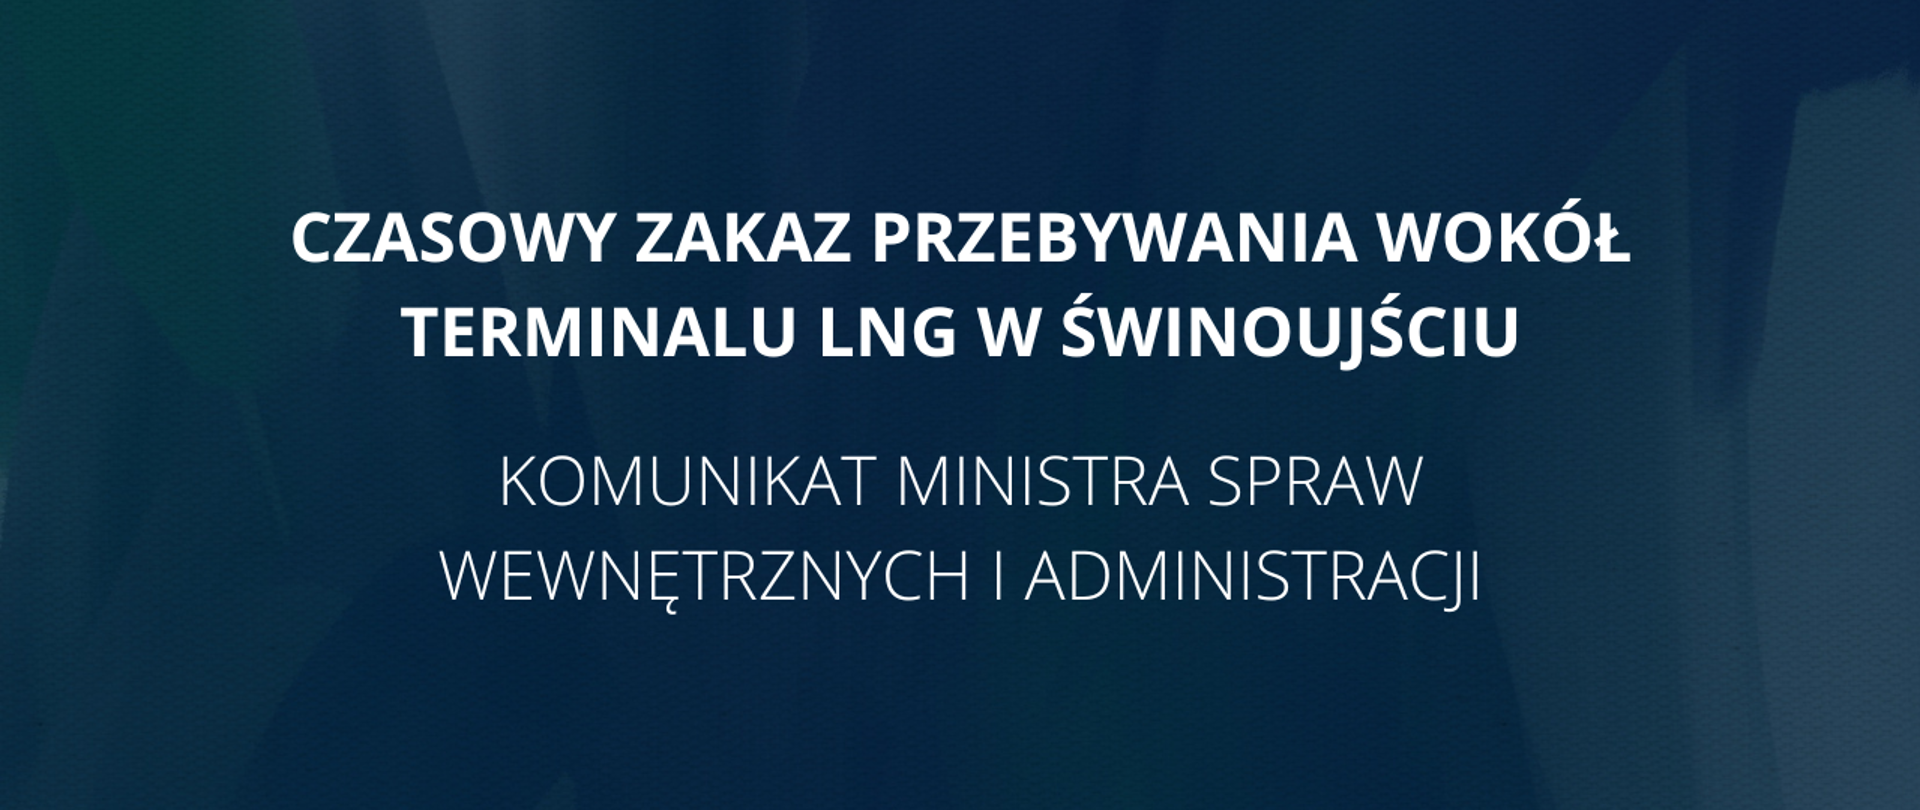 Czasowy zakaz przebywania wokół terminalu LNG w Świnoujściu - komunikat ministra spraw wewnętrznych i administracji.